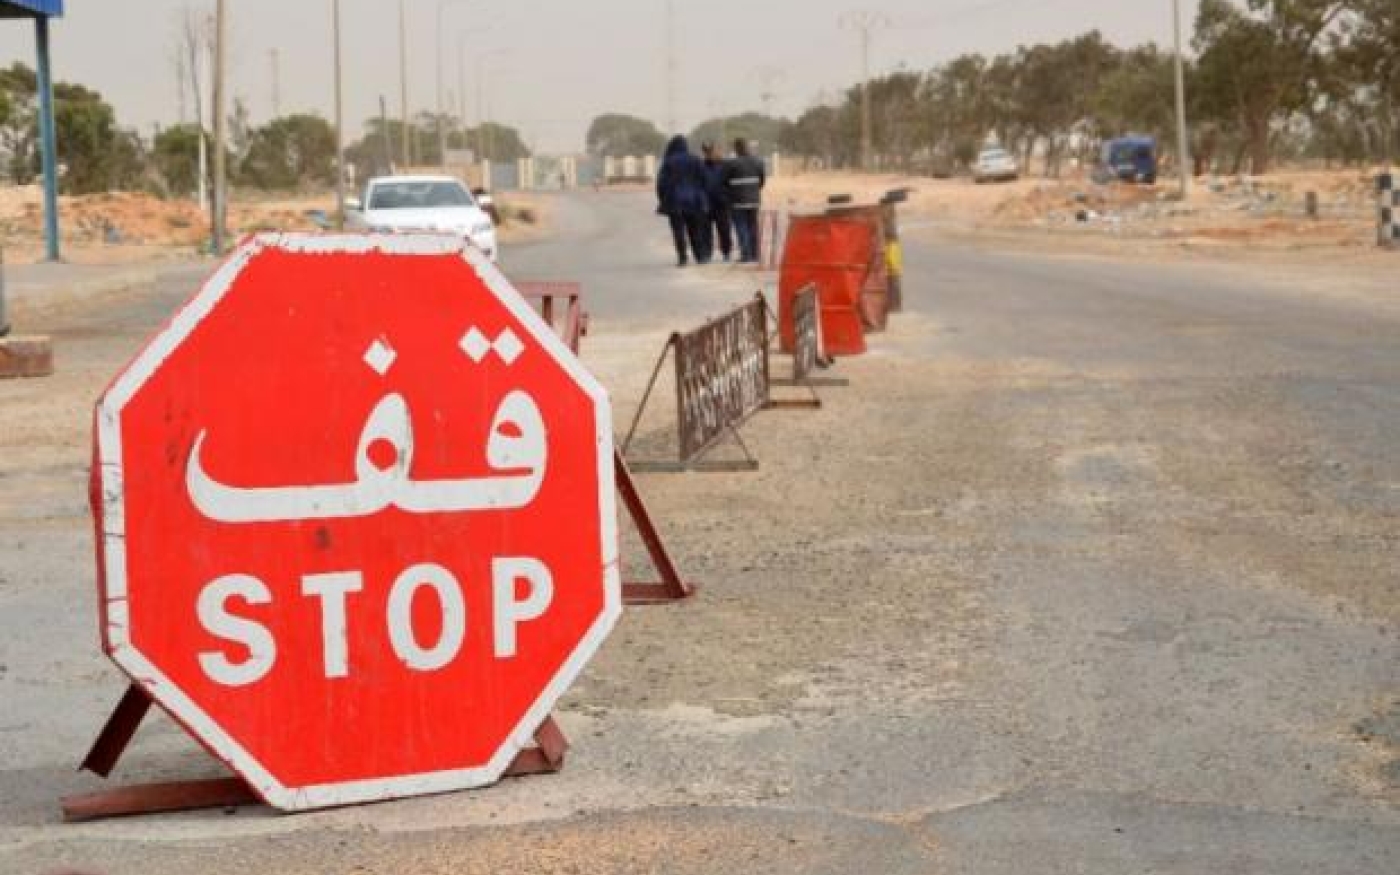 Les abords de la ville frontalière tunisienne de Ben Gardane (AFP)